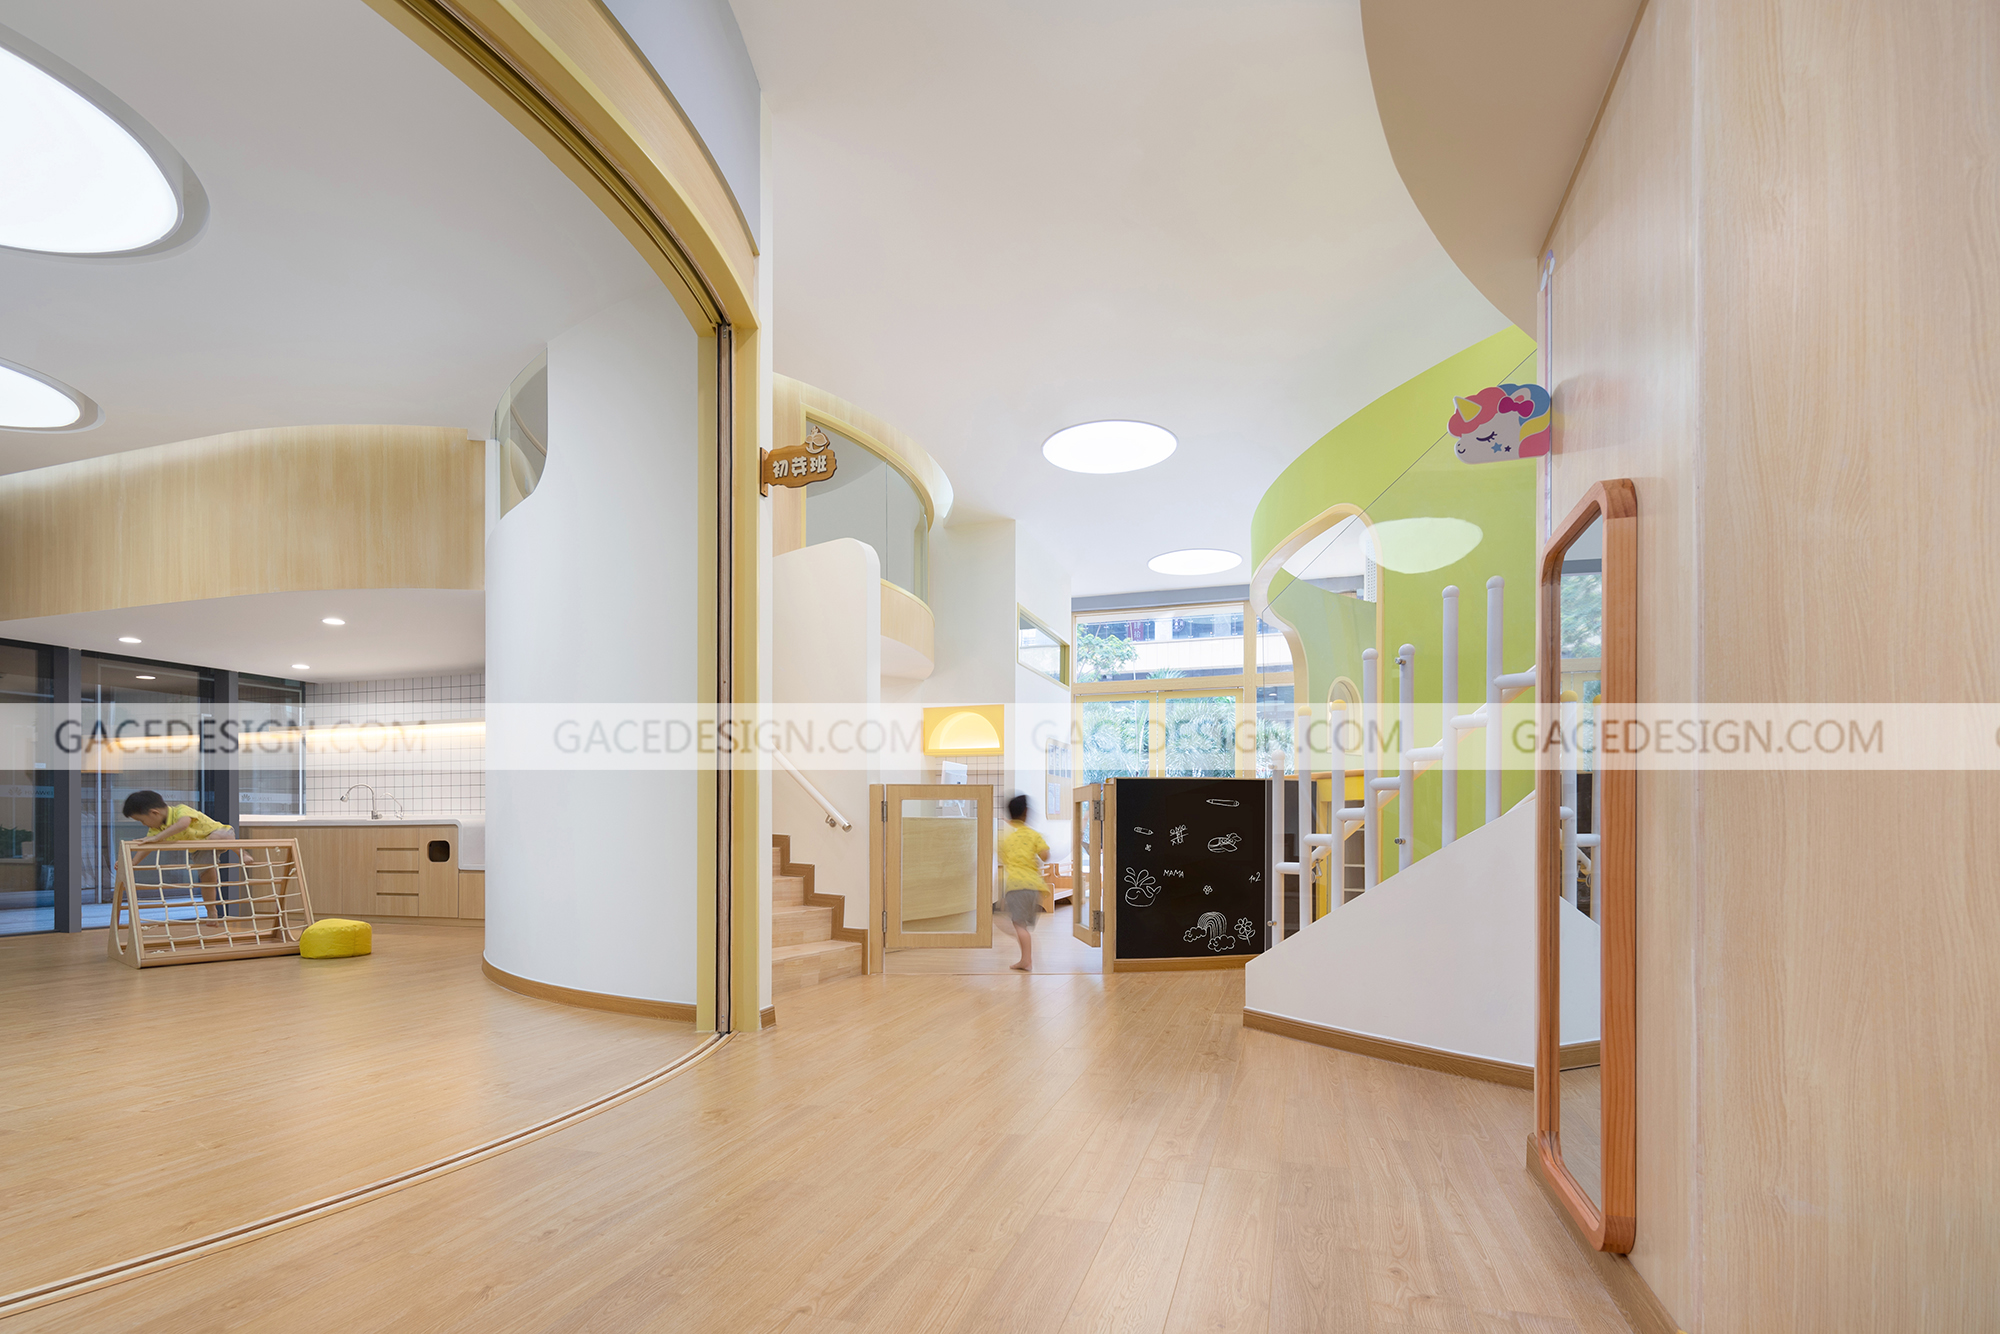 噪音|集合设计|幼儿园设计处理房间隔音的方法